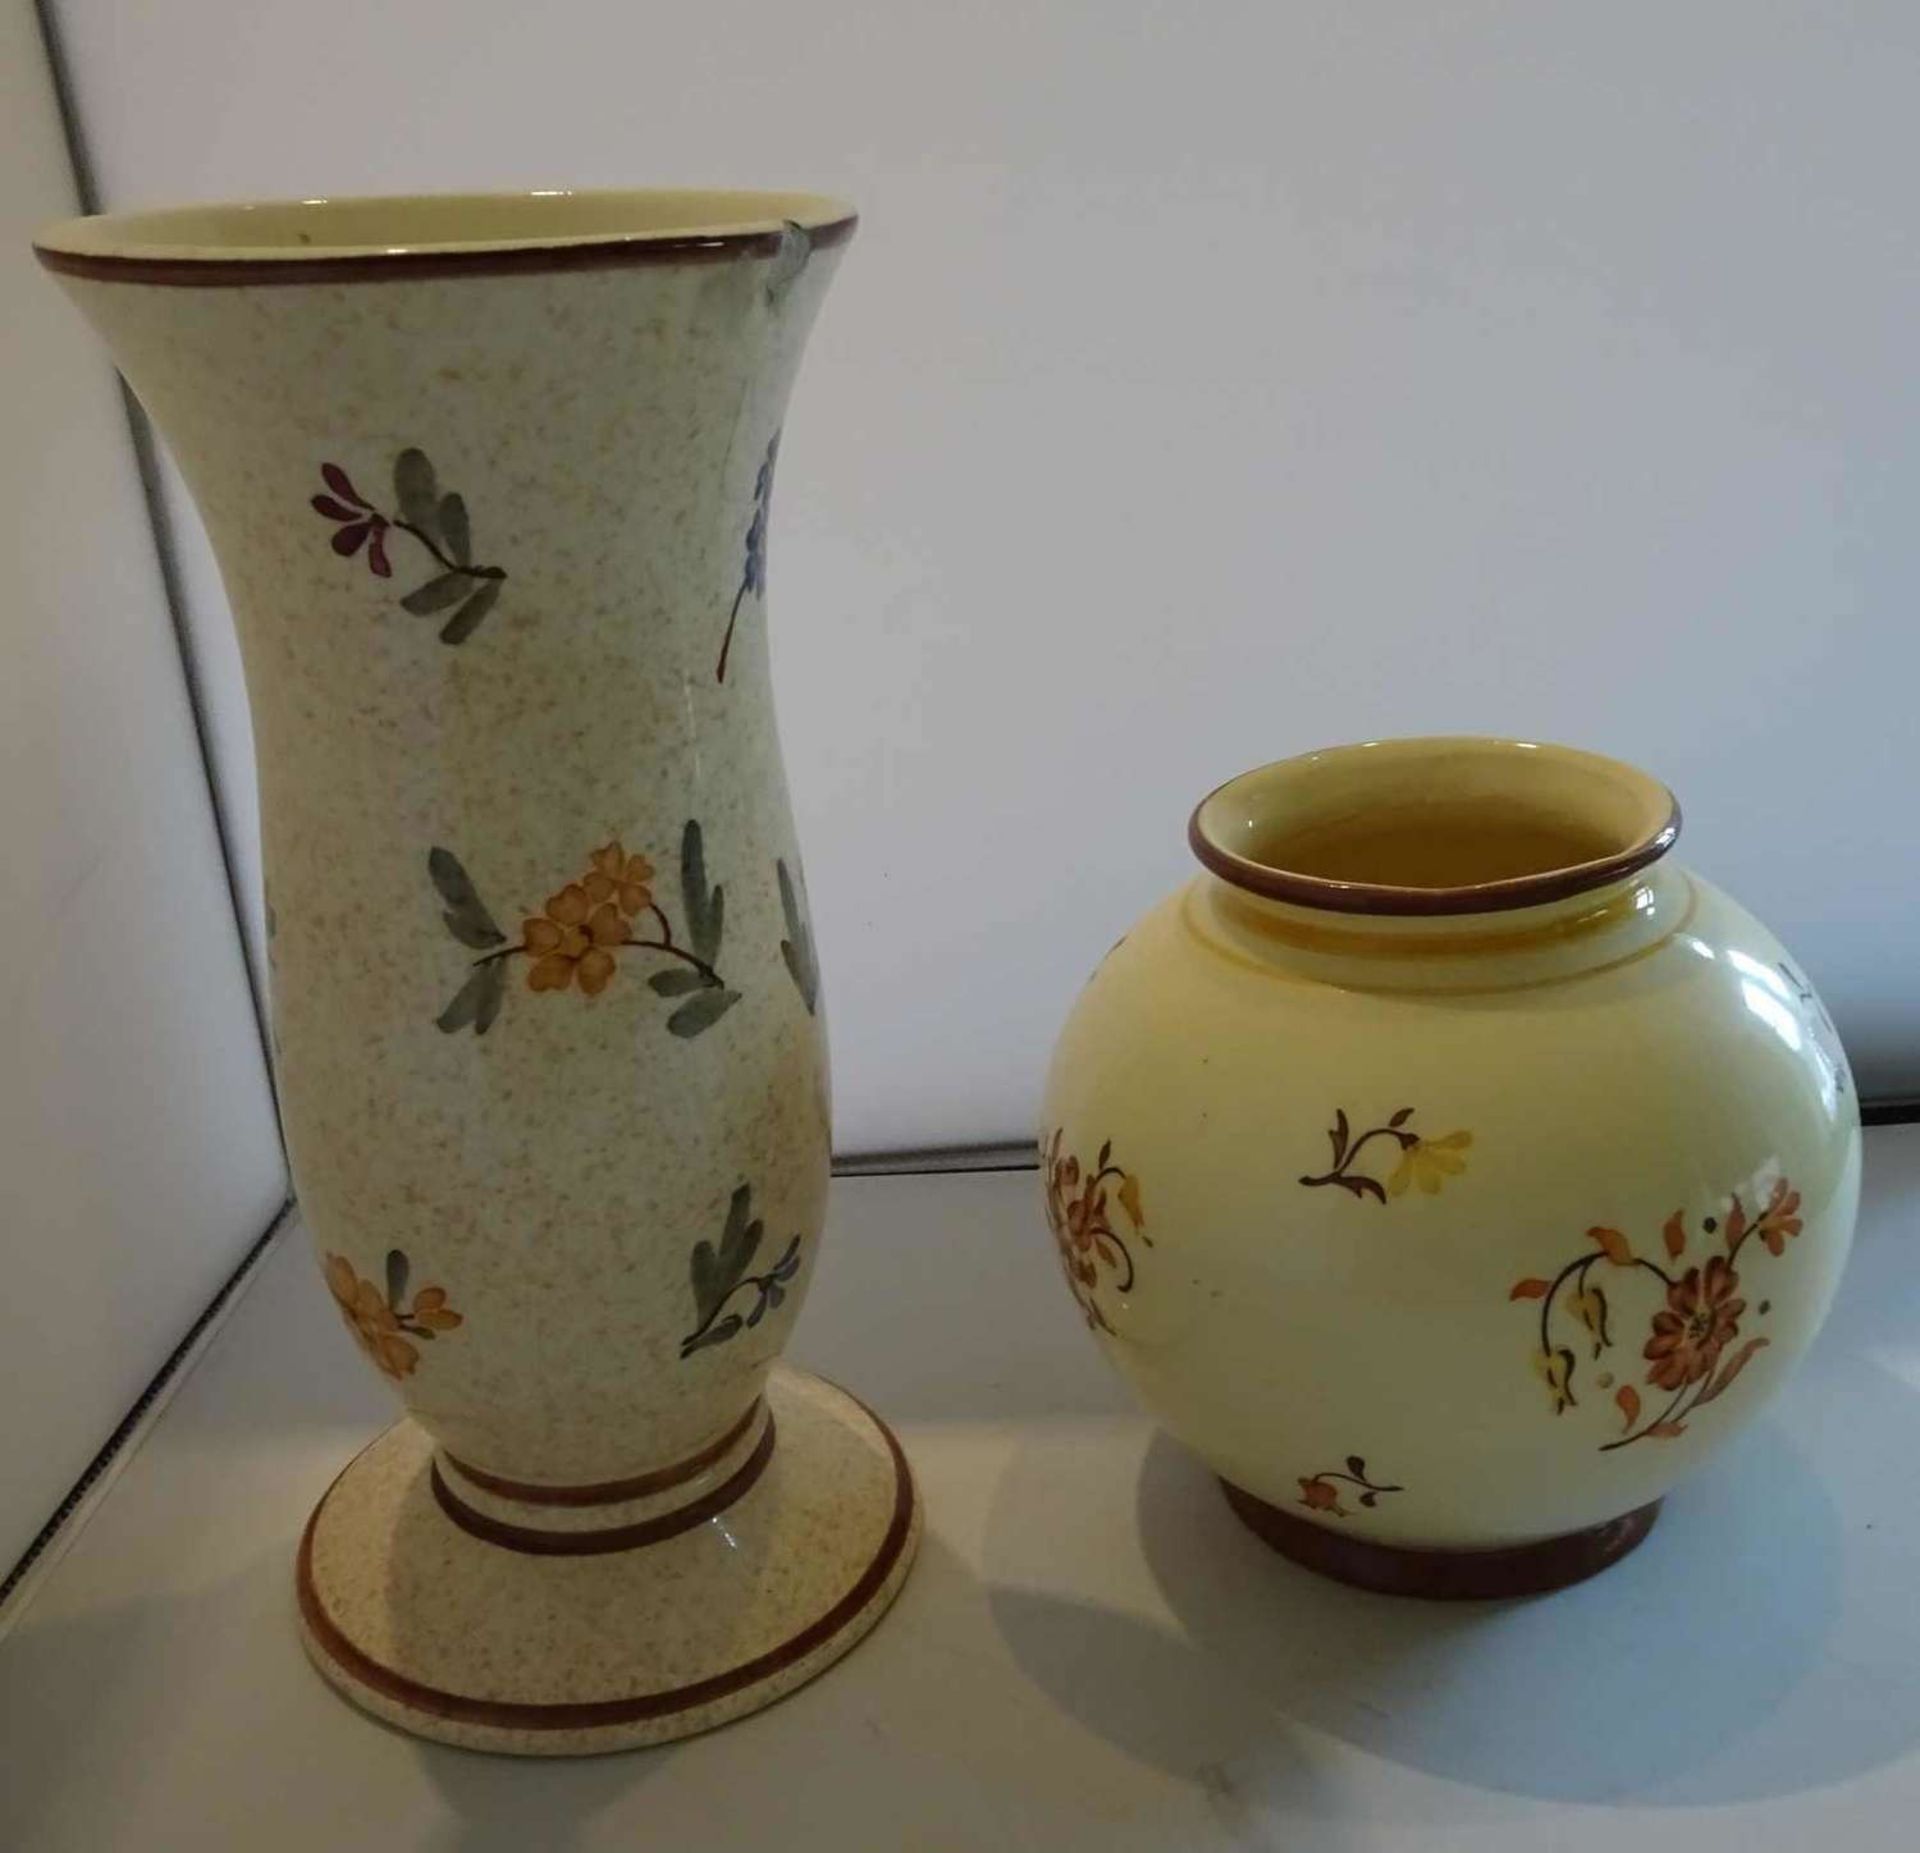 2 Keramikvasen, Grünstadter Keramik. 1x bauchige Vase, Blumenmuster braun/orange, Höhe ca. 14 cm, 1x